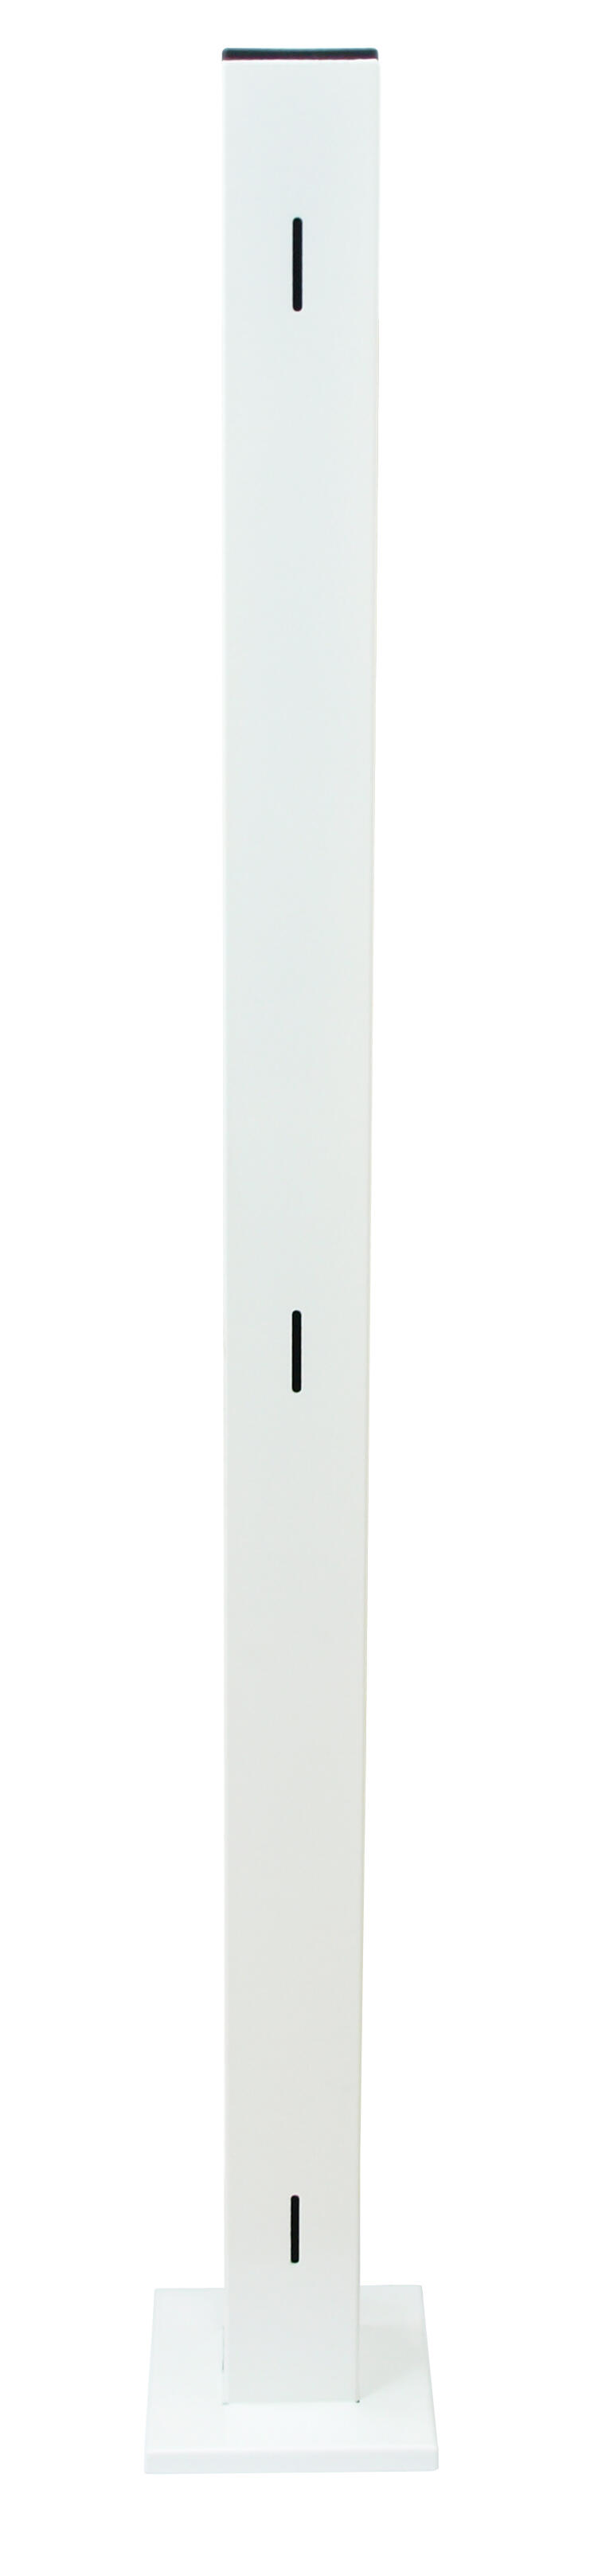 Poste de esquina acero galvanizado blanco 50x13 cm